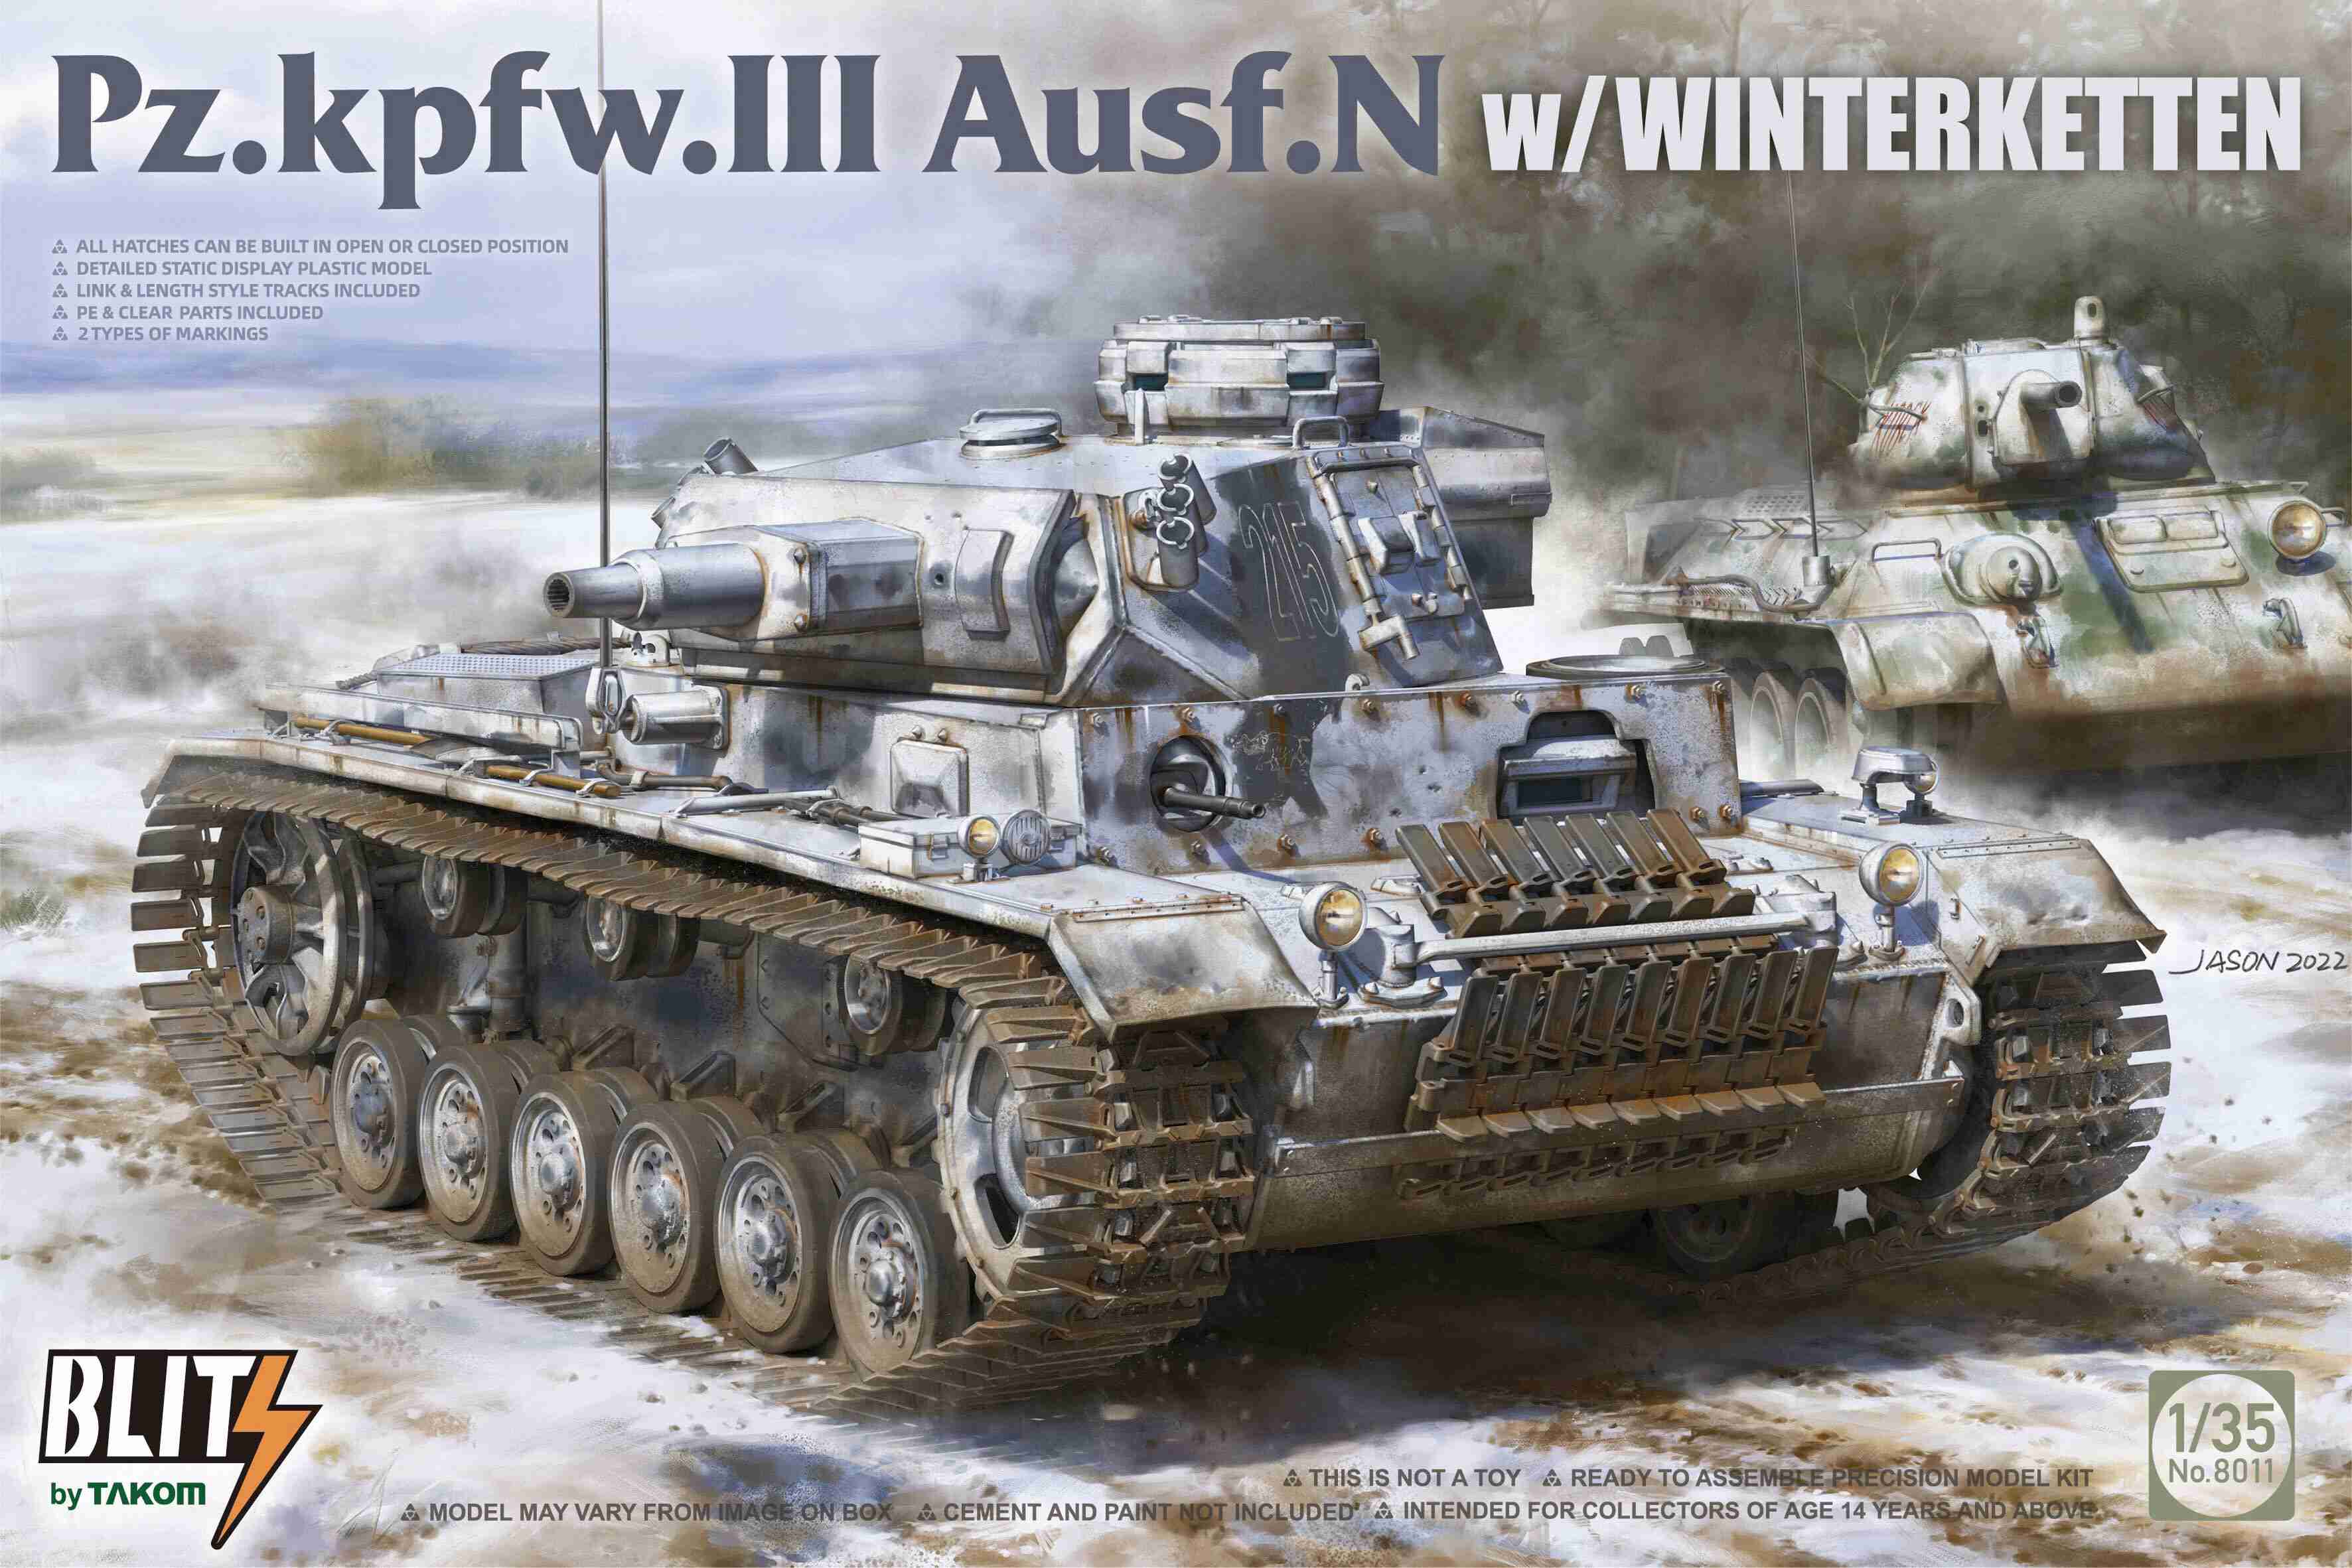 Fotografie 1/35 Pz.Kpfw. III Ausf. N with Winterketten